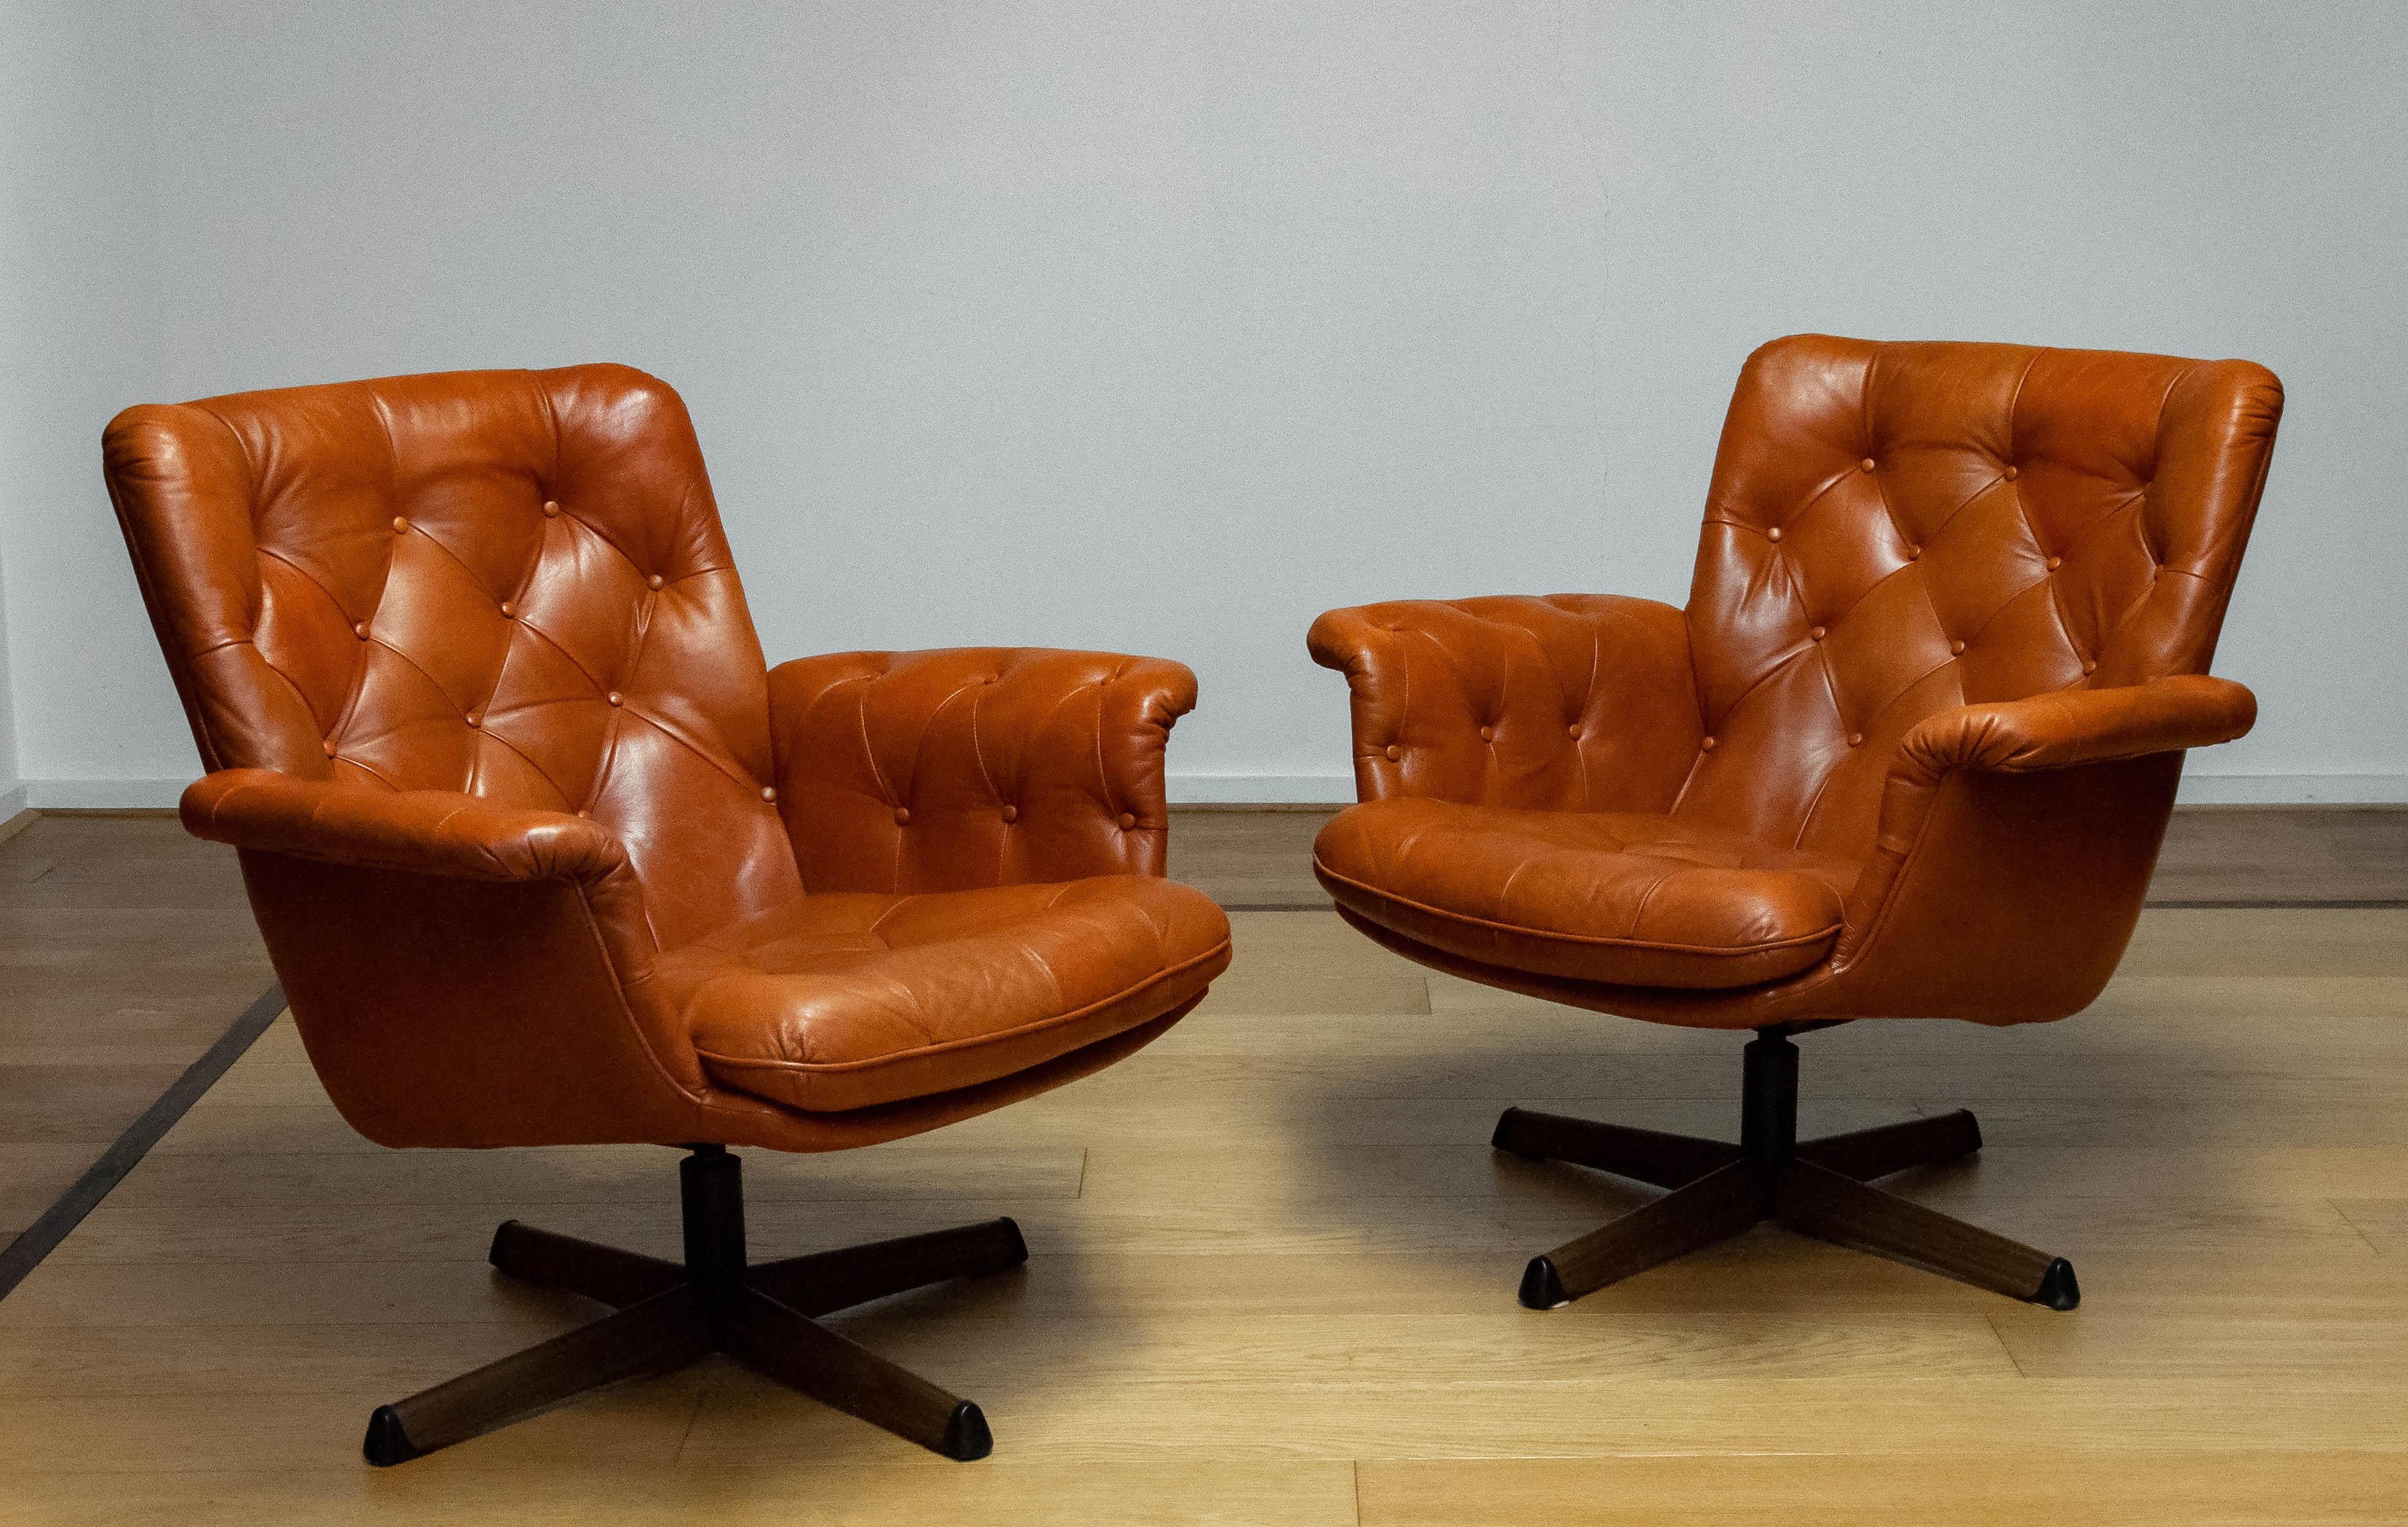 Magnifique paire de chaises pivotantes fabriquées par Göte Möbler Nässjö Suède, années 1960.
Ces chaises sont recouvertes de cuir cognac tufté et montées sur un pied pivotant en métal avec une empreinte de bois.
Les chaises sont très confortables et